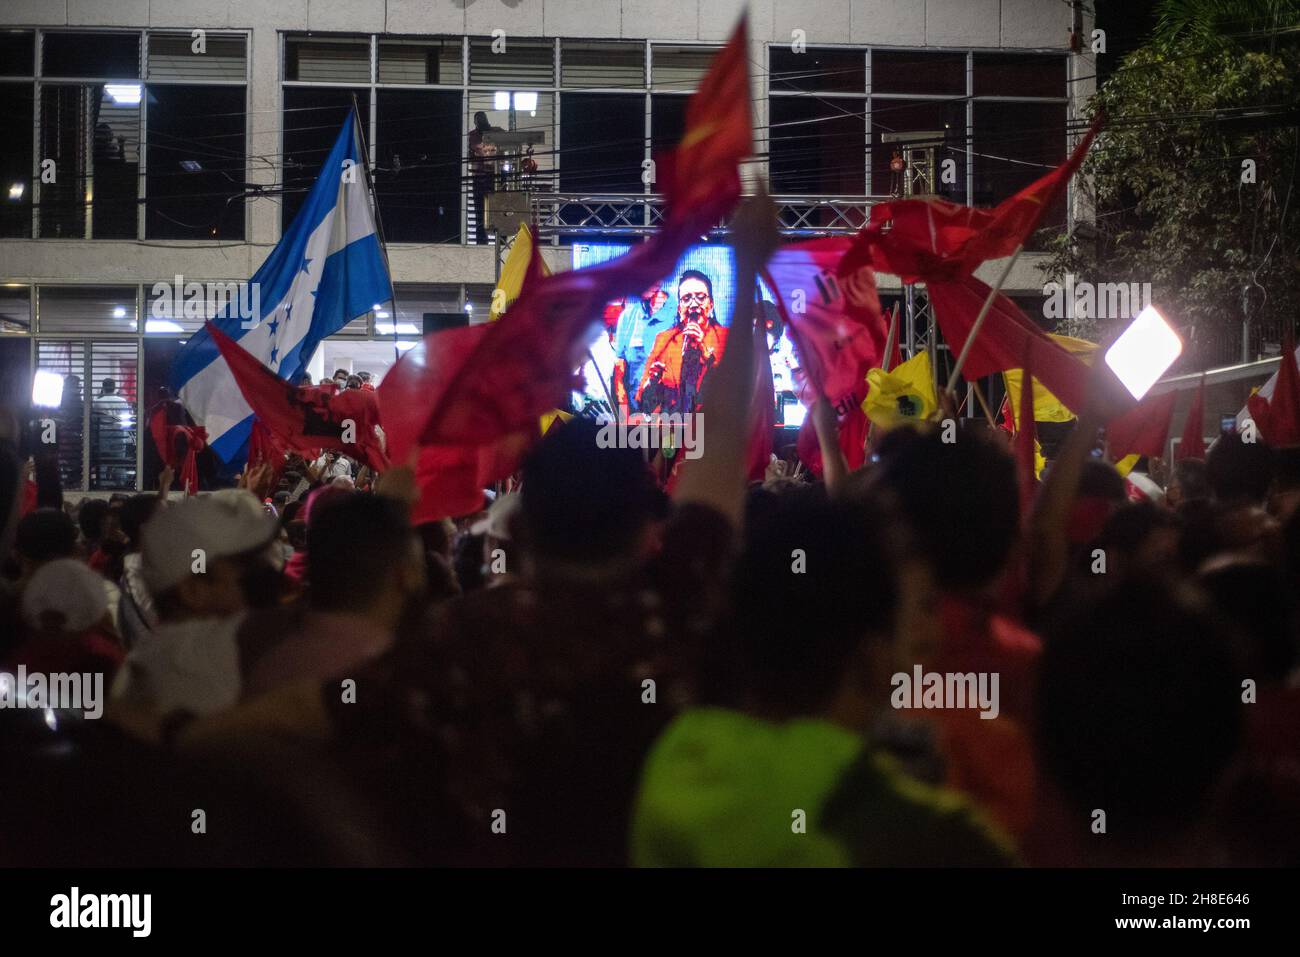 Les partisans brandient les drapeaux tout en regardant Xiomara Castro prononcer un discours après les résultats préliminaires lors de l'élection présidentielle.Le 28 novembre, le Honduras a tenu ses élections présidentielles, après 12 ans de parti national qui contrôle l'opposition, le Parti libre et Xiomara Castro ont une chance de reprendre le pouvoir.Castro a prononcé un discours après que les premiers résultats des votes l'ont montré à la tête de 20 pour cent.Les partisans du Parti libre l'ont célébré toute la nuit comme une victoire, bien qu'aucune décision sur le vainqueur n'ait encore été officielle.(Photo de Seth Sidney Berry/SOPA Images/Sipa USA) Banque D'Images